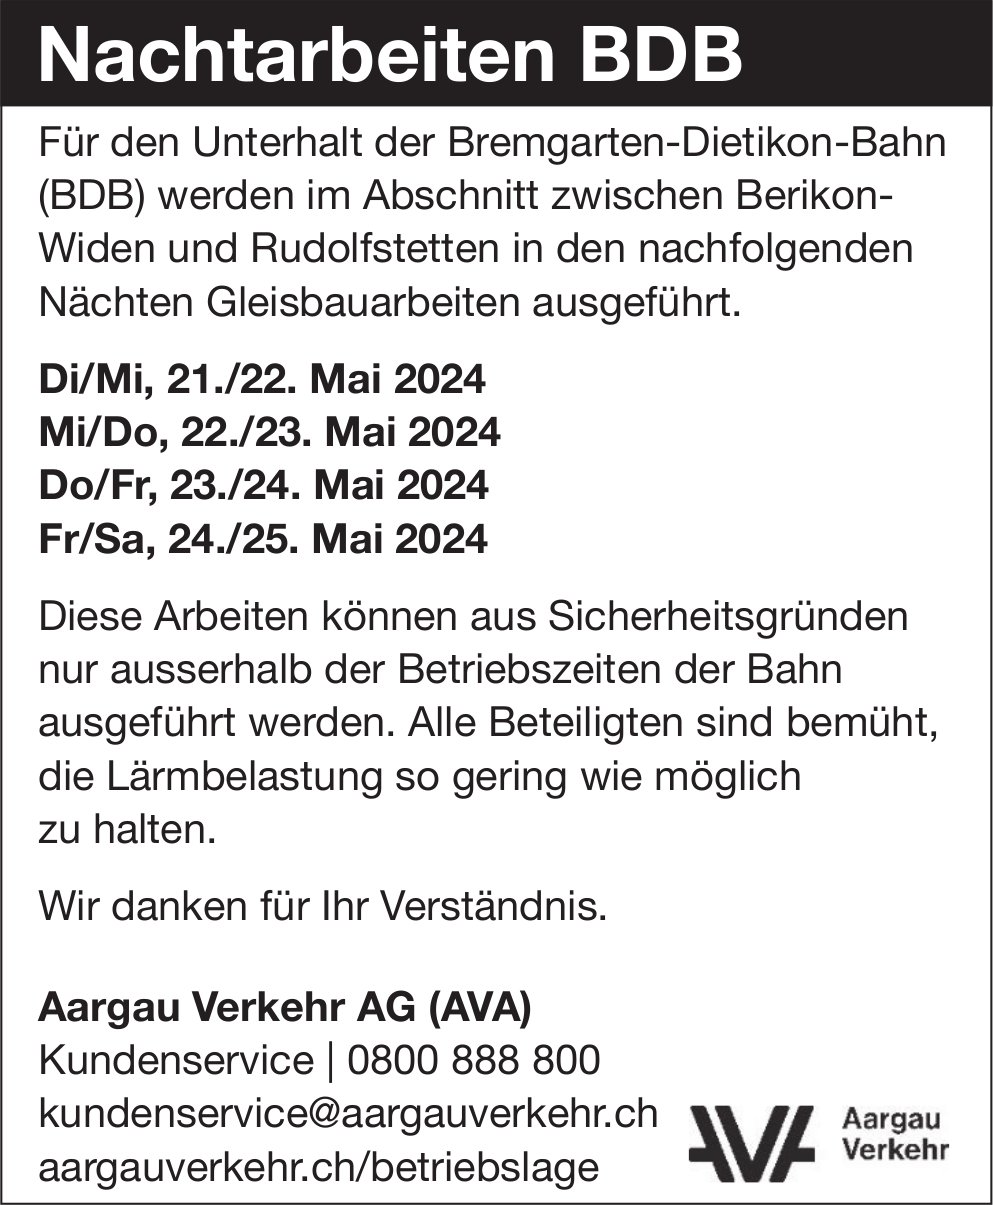 Berikon-Widen und Rudolfstetten - Aargau Verkehr AG, Nachtarbeiten BDB, 21. bis 25. Mai